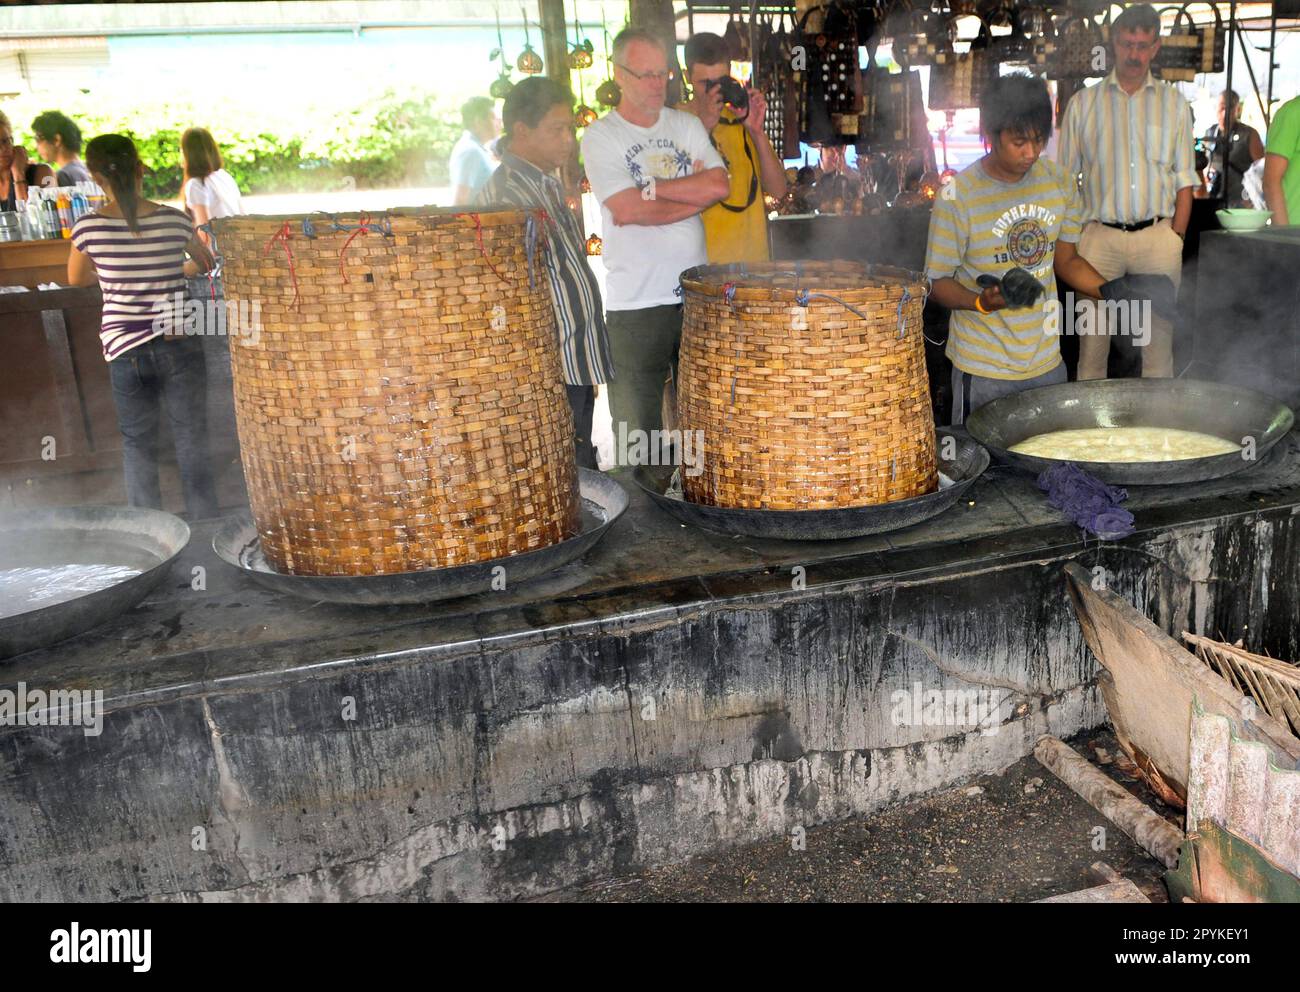 Un homme thaïlandais cuisant des œufs et du porc freGrant ragoût dans un style traditionnel au marché ferroviaire haut en couleur de Mae Klong, au sud-ouest de Bangkok, en Thaïlande. Banque D'Images